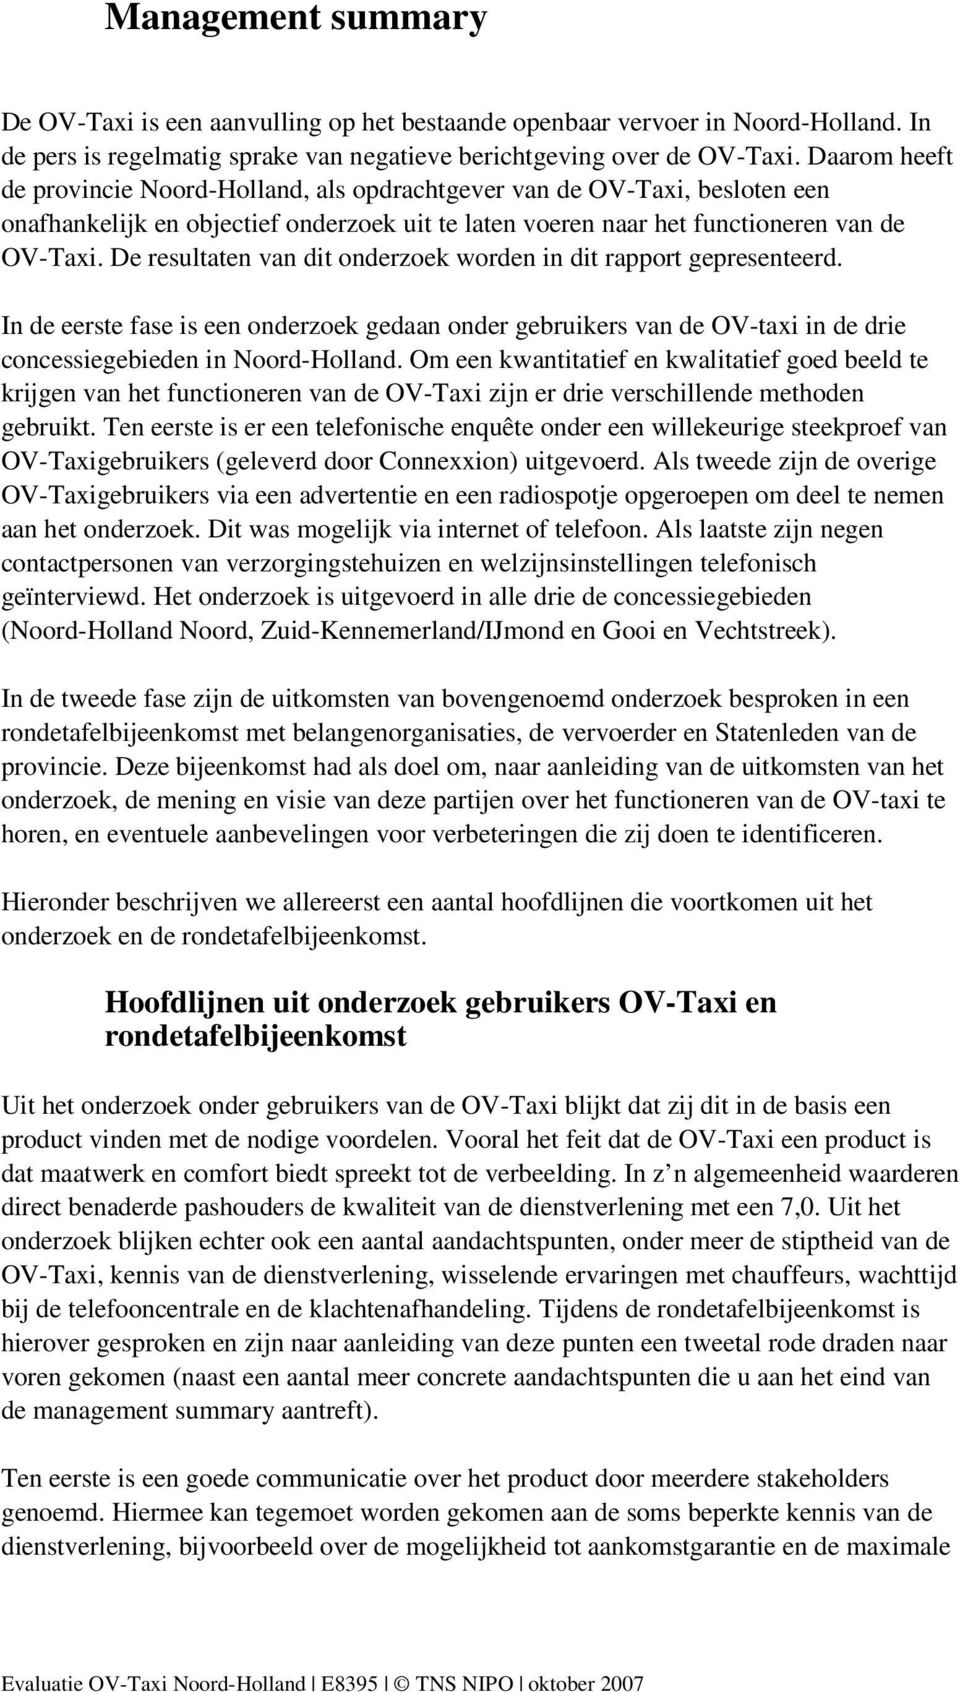 De resultaten van dit onderzoek worden in dit rapport gepresenteerd. In de eerste fase is een onderzoek gedaan onder gebruikers van de OV-taxi in de drie concessiegebieden in Noord-Holland.